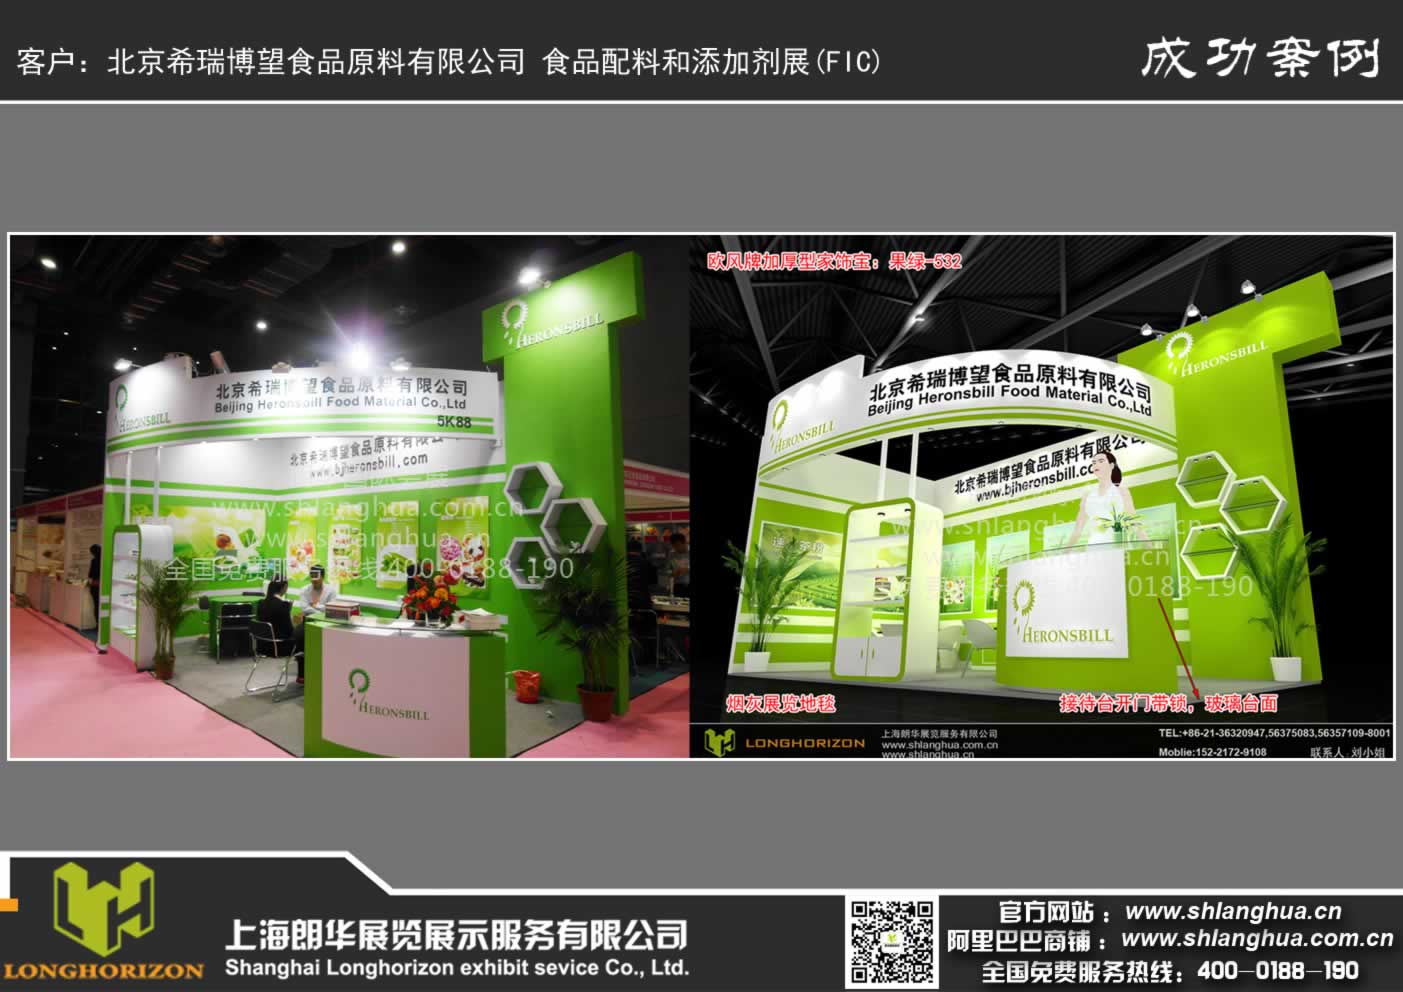 北京希瑞博望食品原料有限公司 食品配料和添加剂展(FIC)